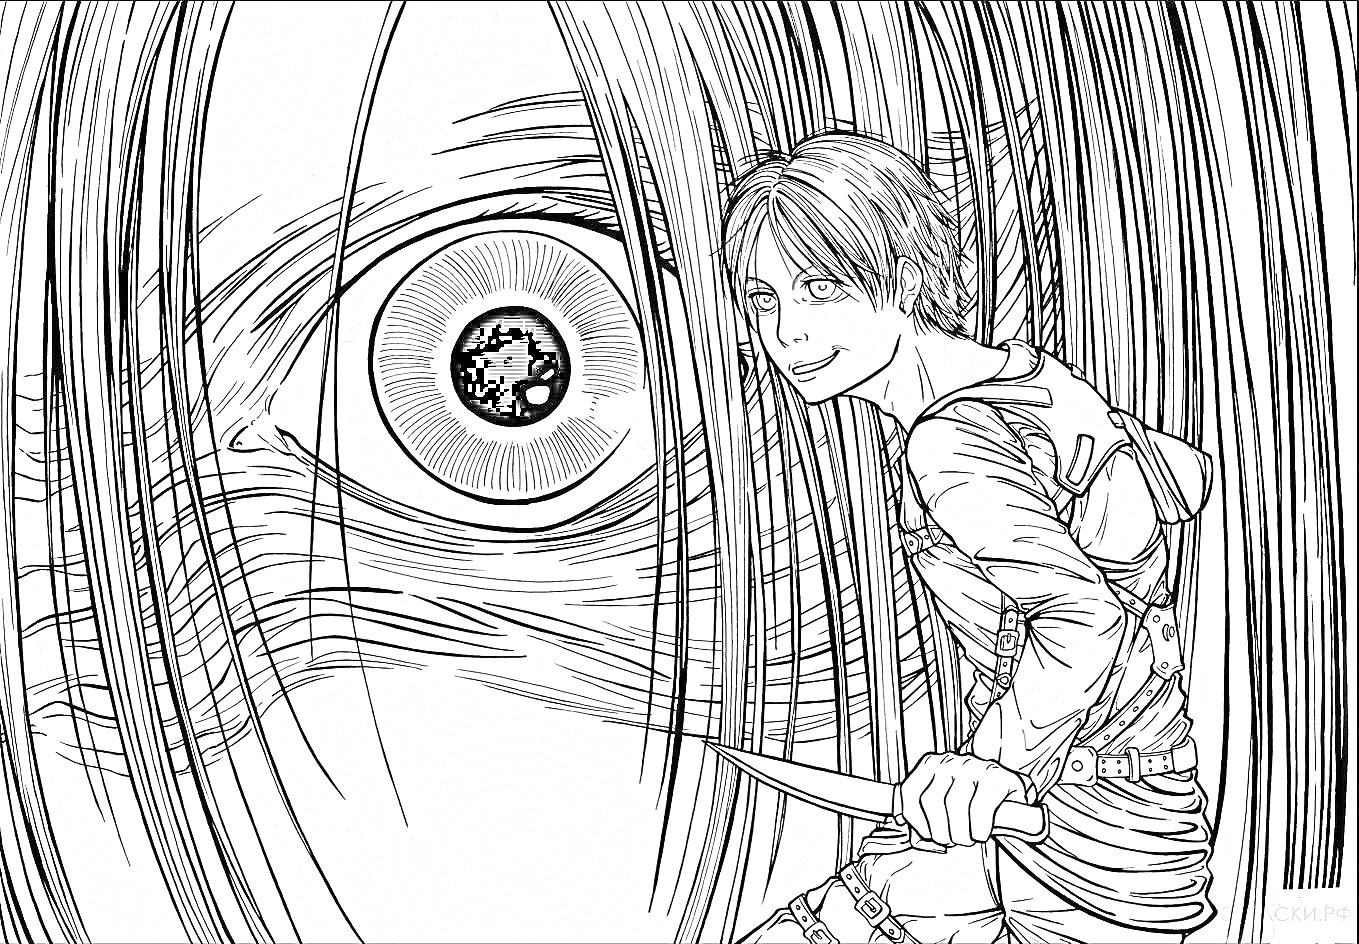 Раскраска Герой с мечом против Титана с крупным глазом на переднем плане